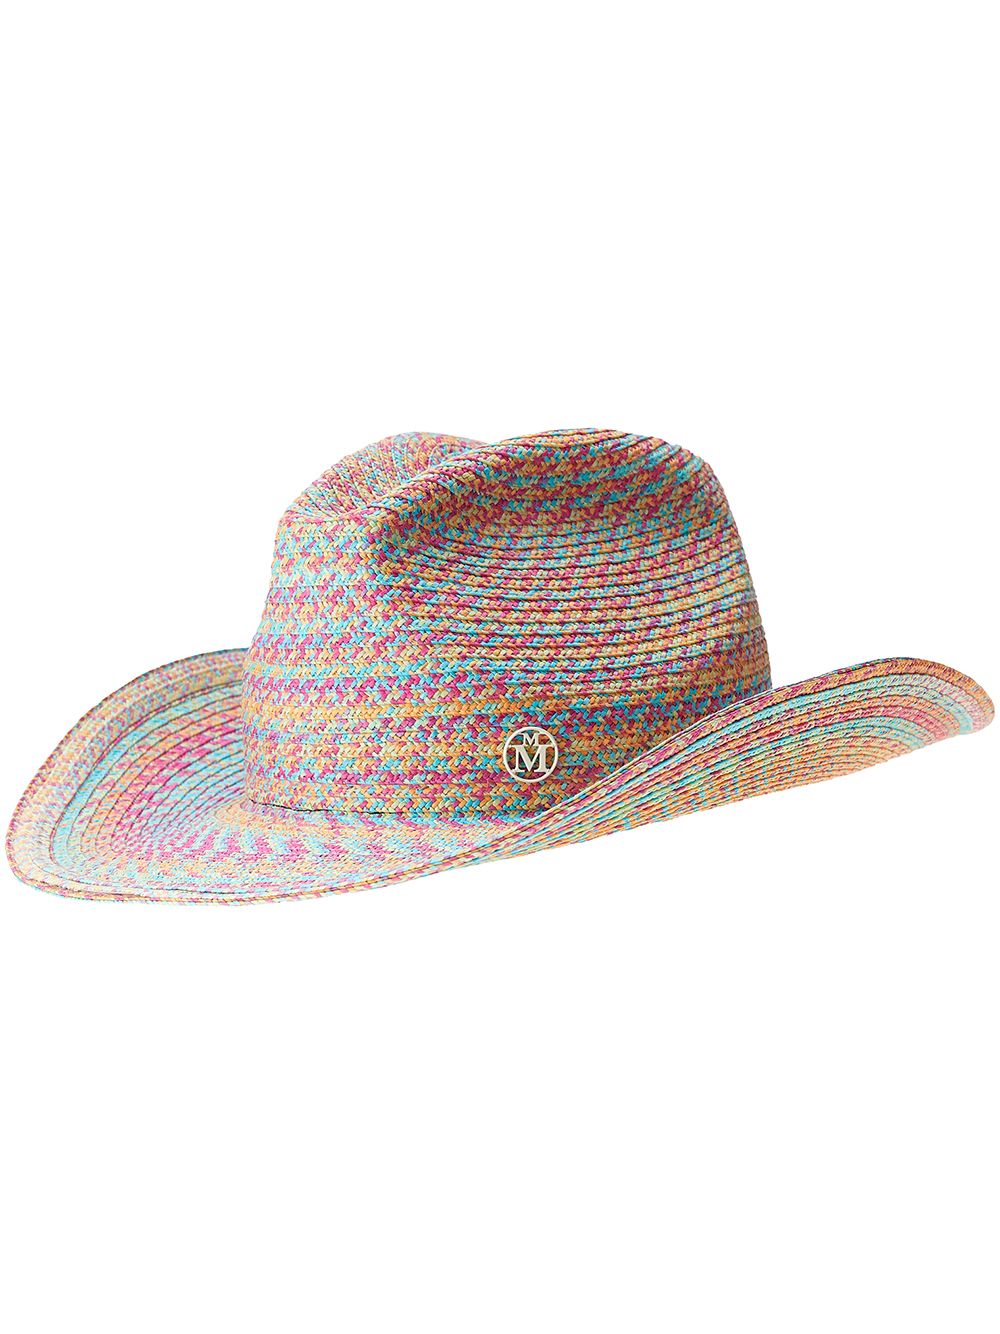 фото Maison michel плетеная ковбойская шляпа austin